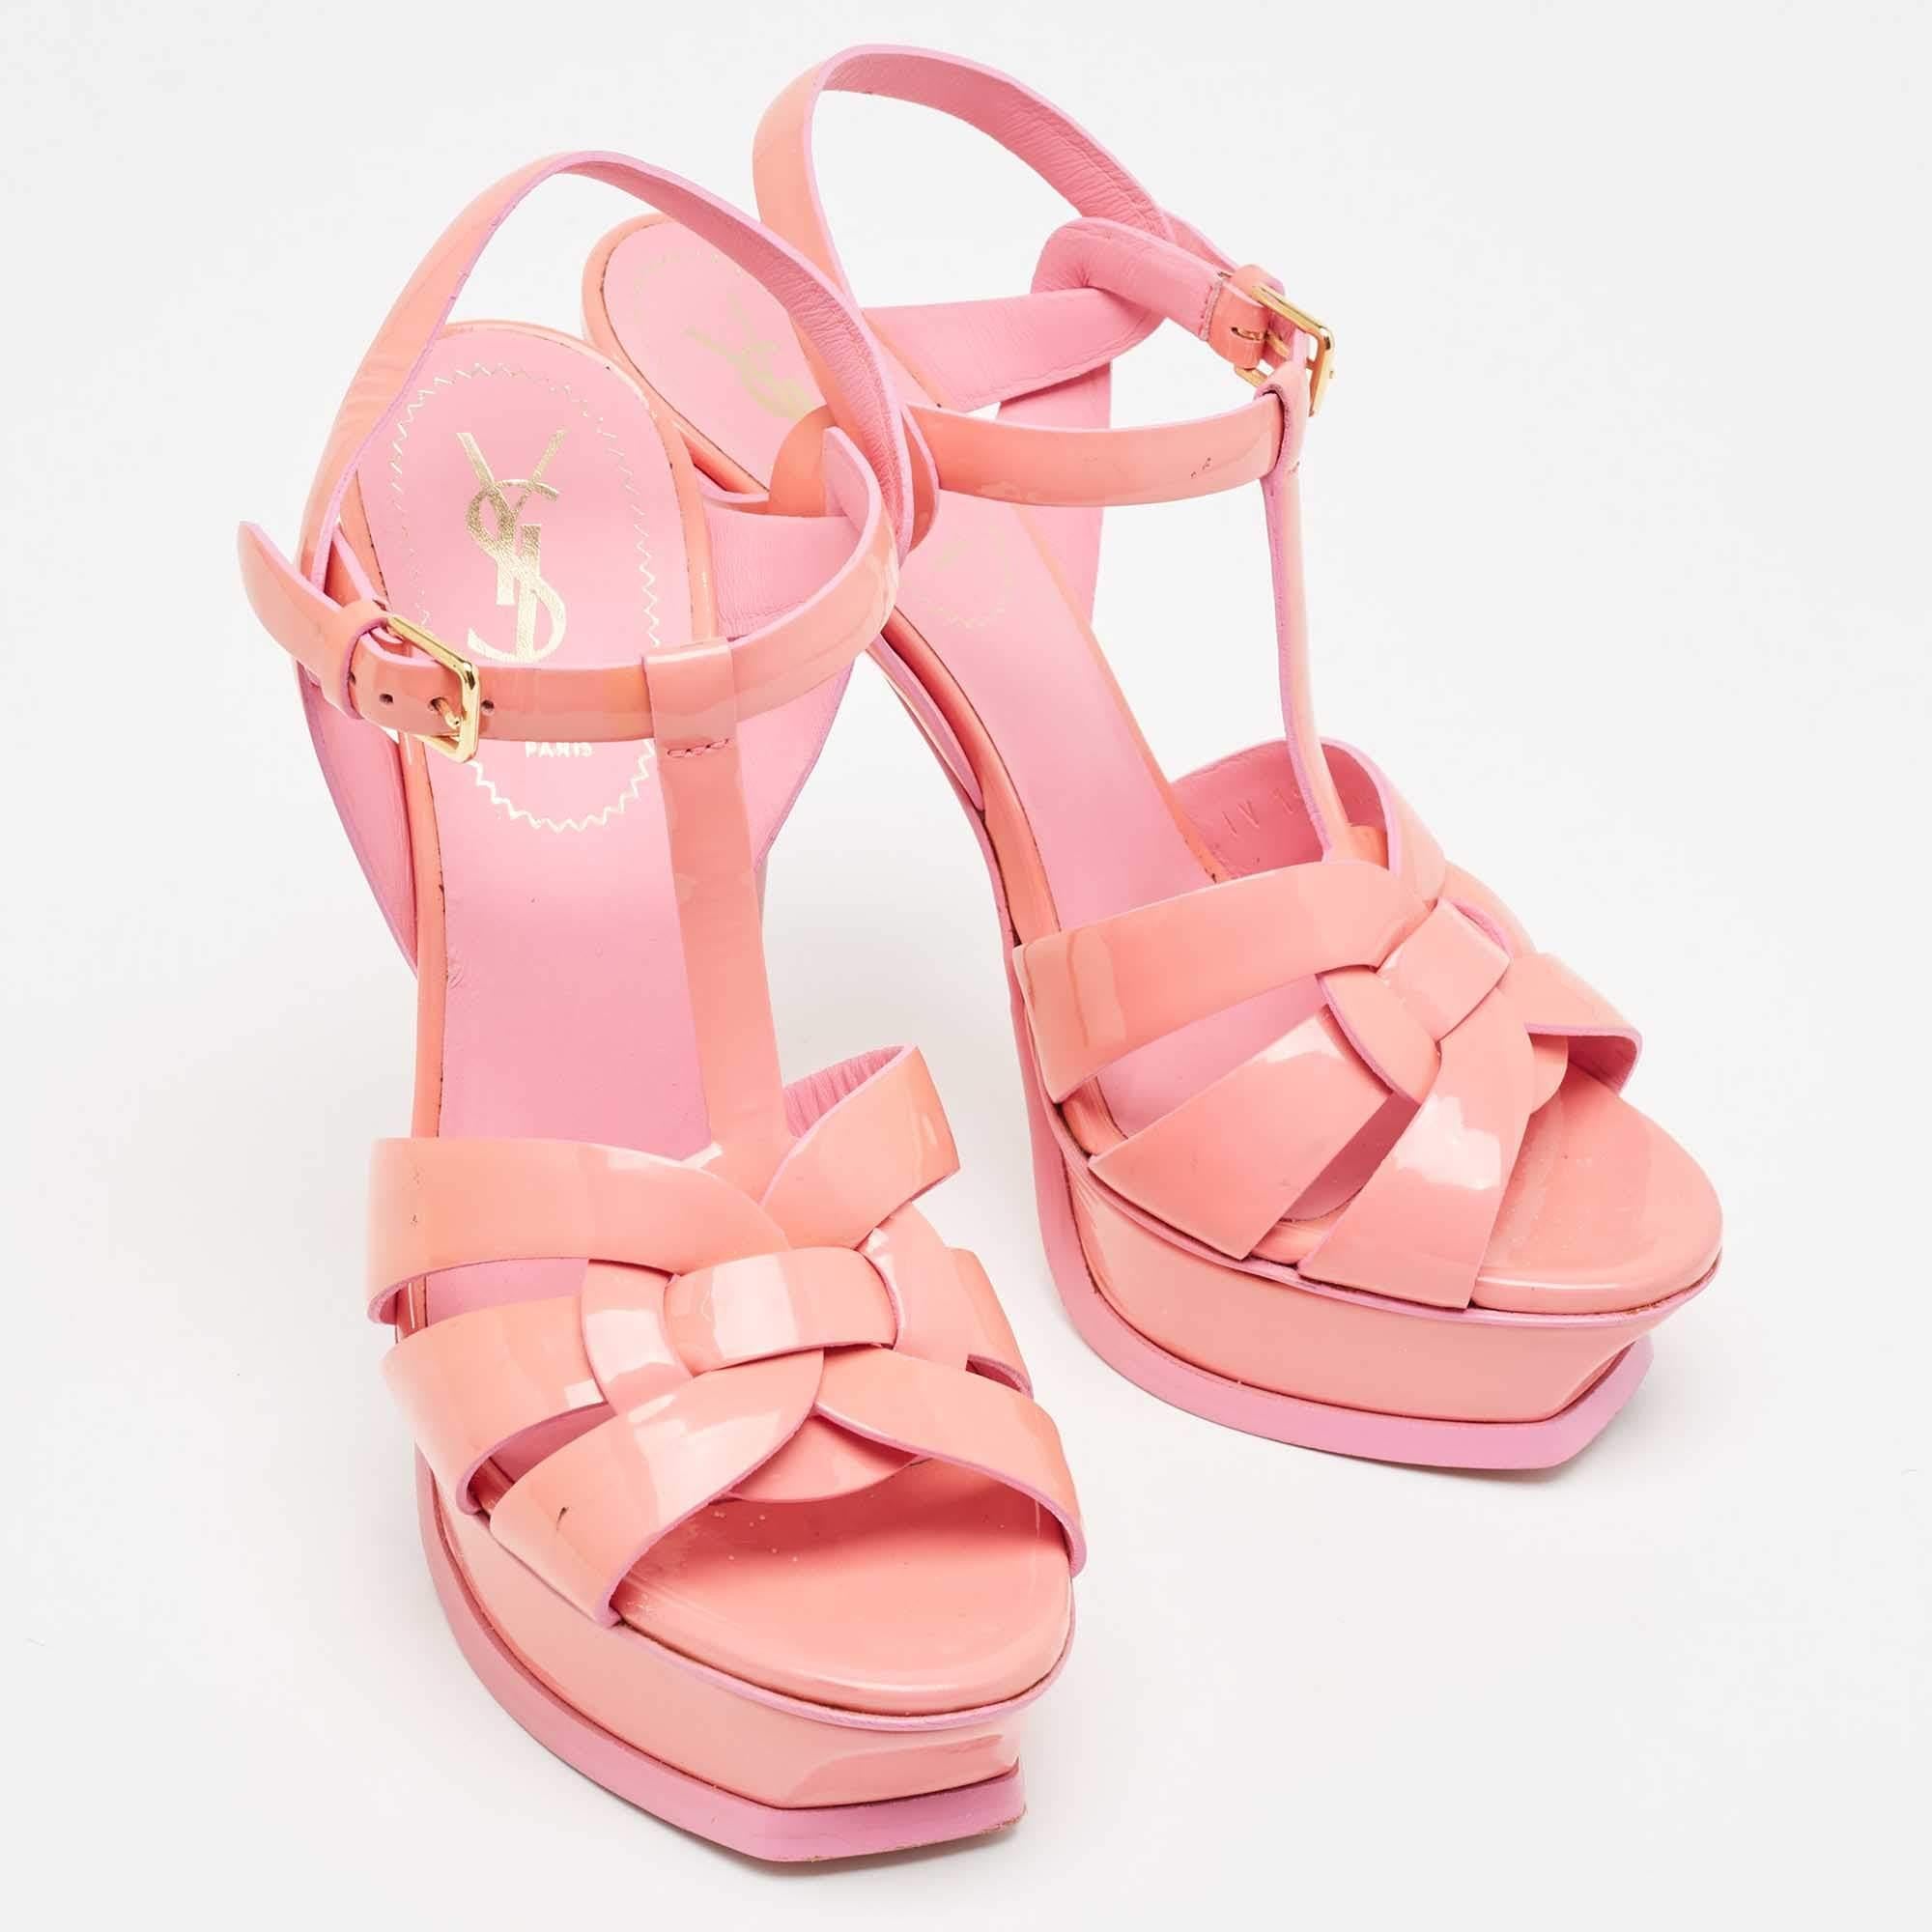 Yves Saint Laurent Pink Patent Tribute Sandals Size 37 4